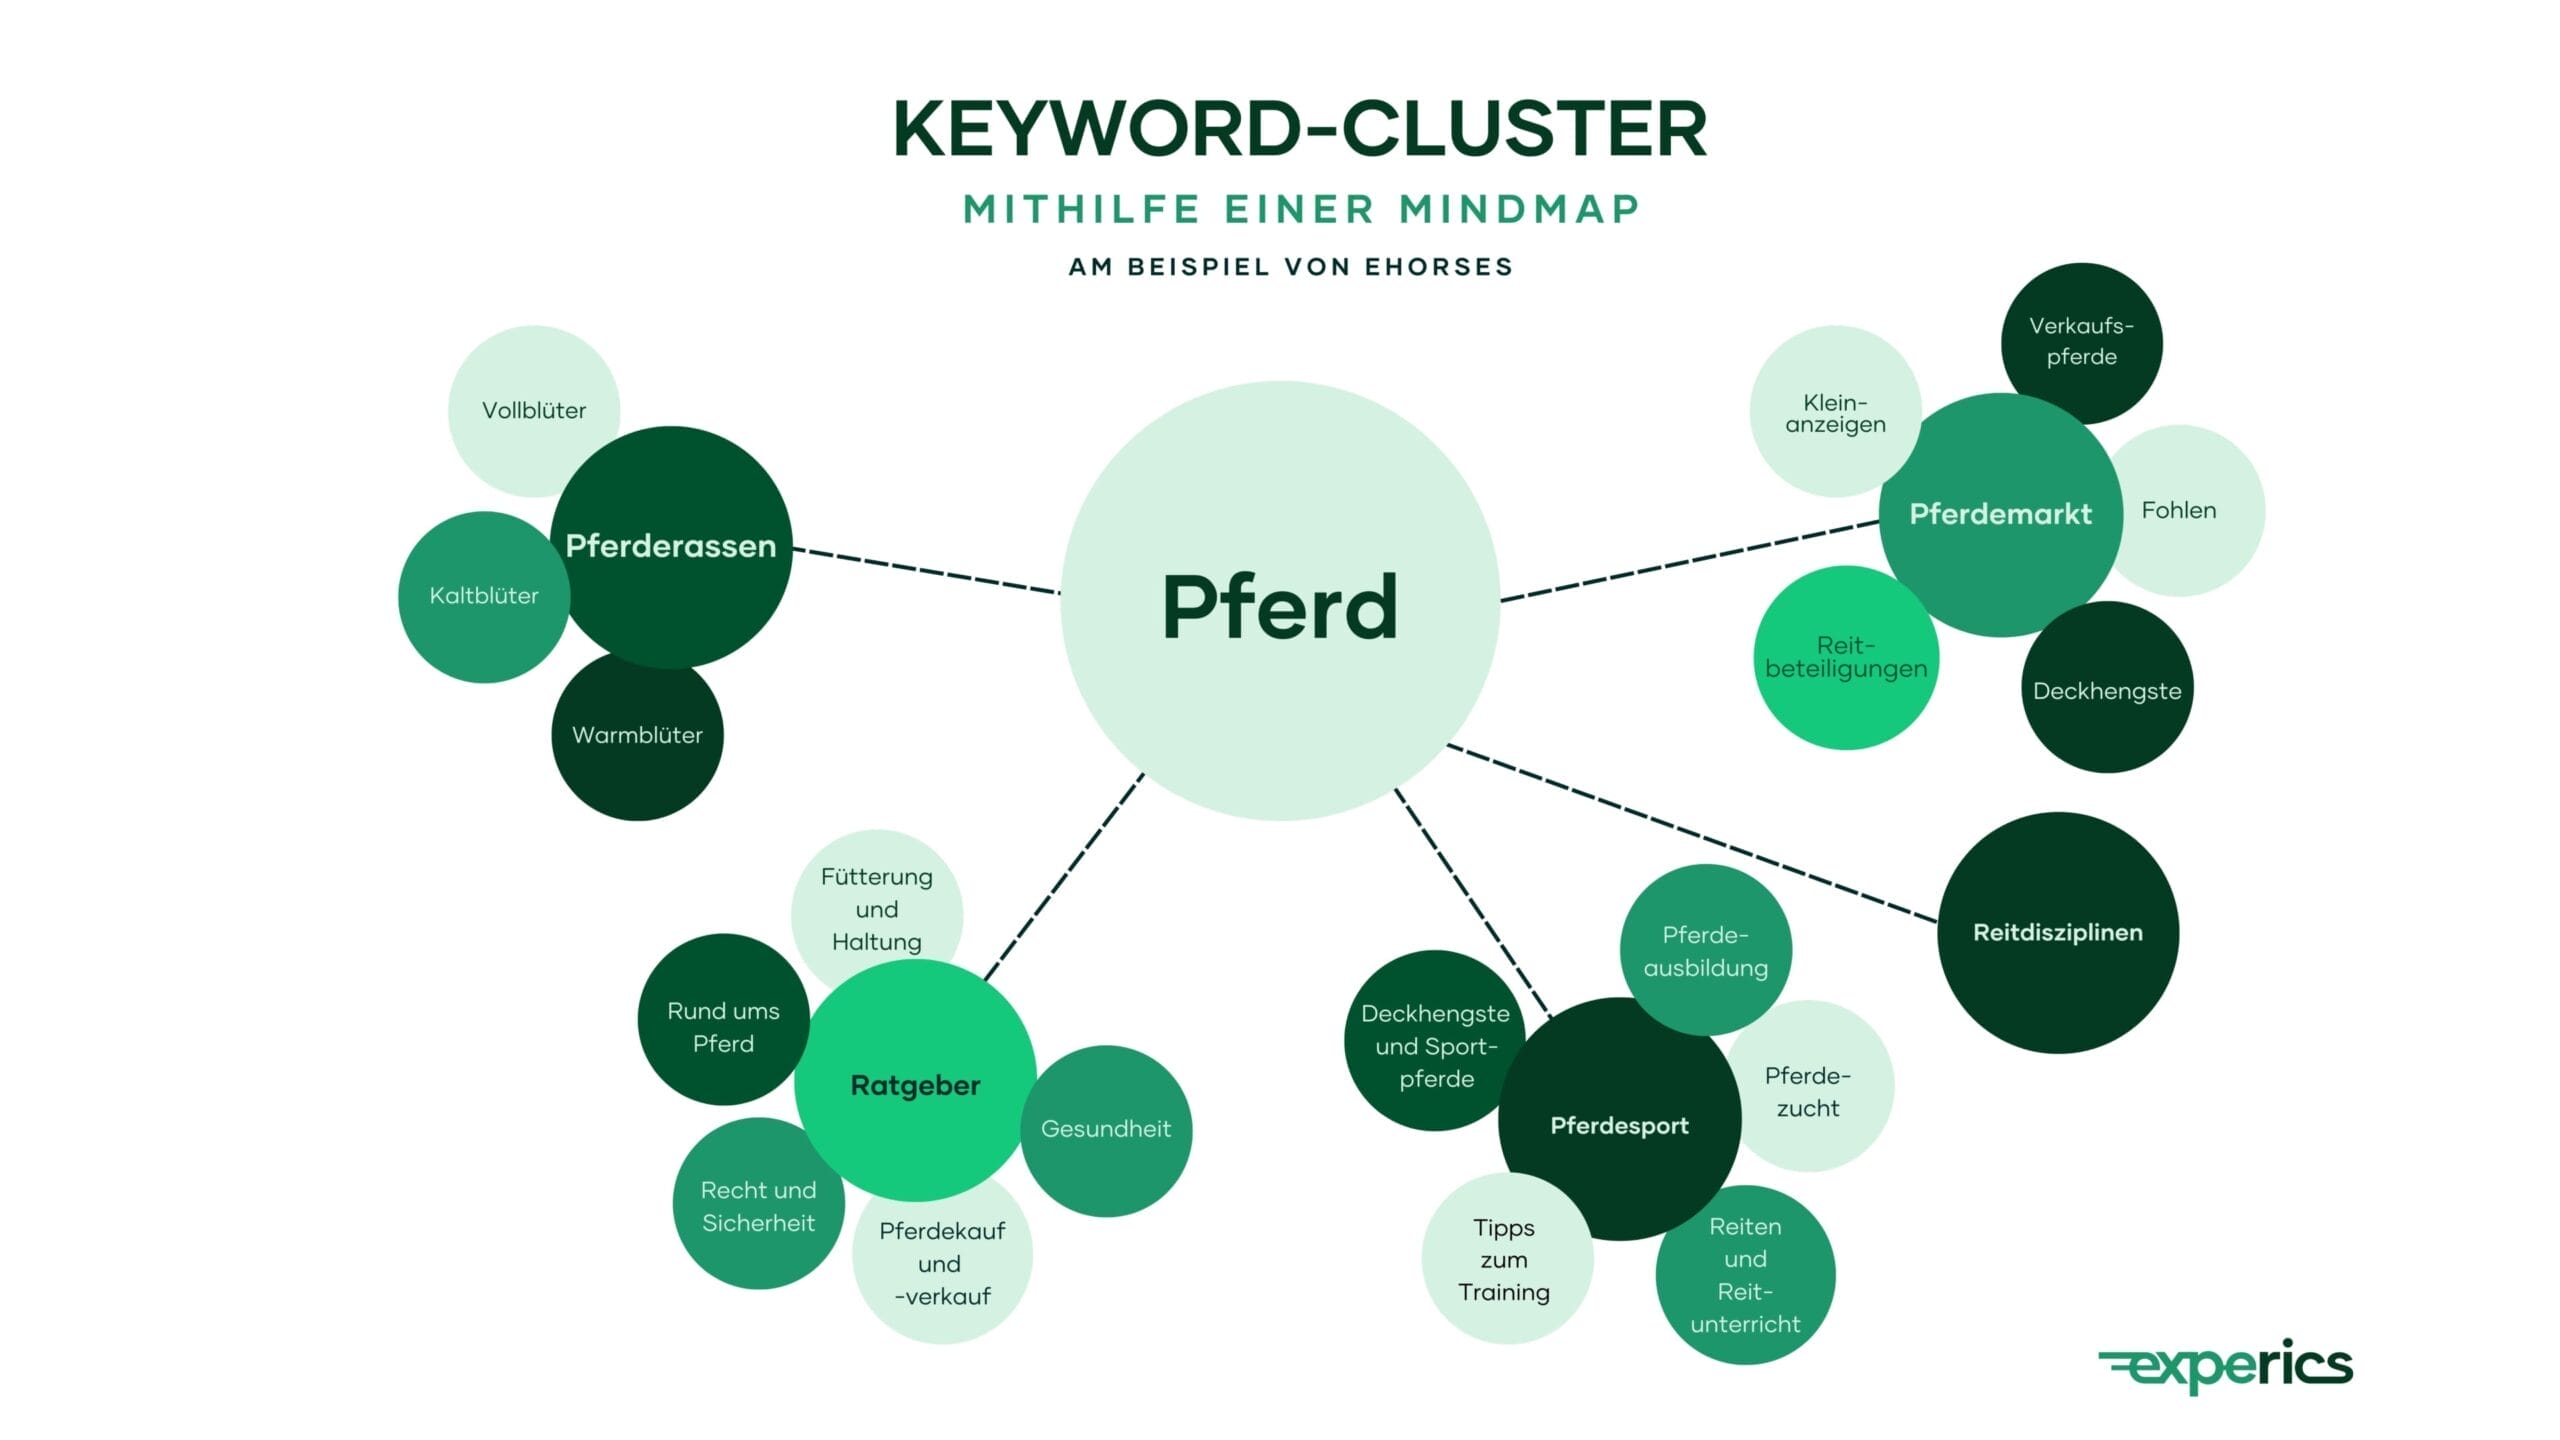 Keyword-Cluster Sind Eine Große Hilfe Beim Erstellen Einer Sitemap, Wie Das Unser Kundenbeispiel Zeigt.